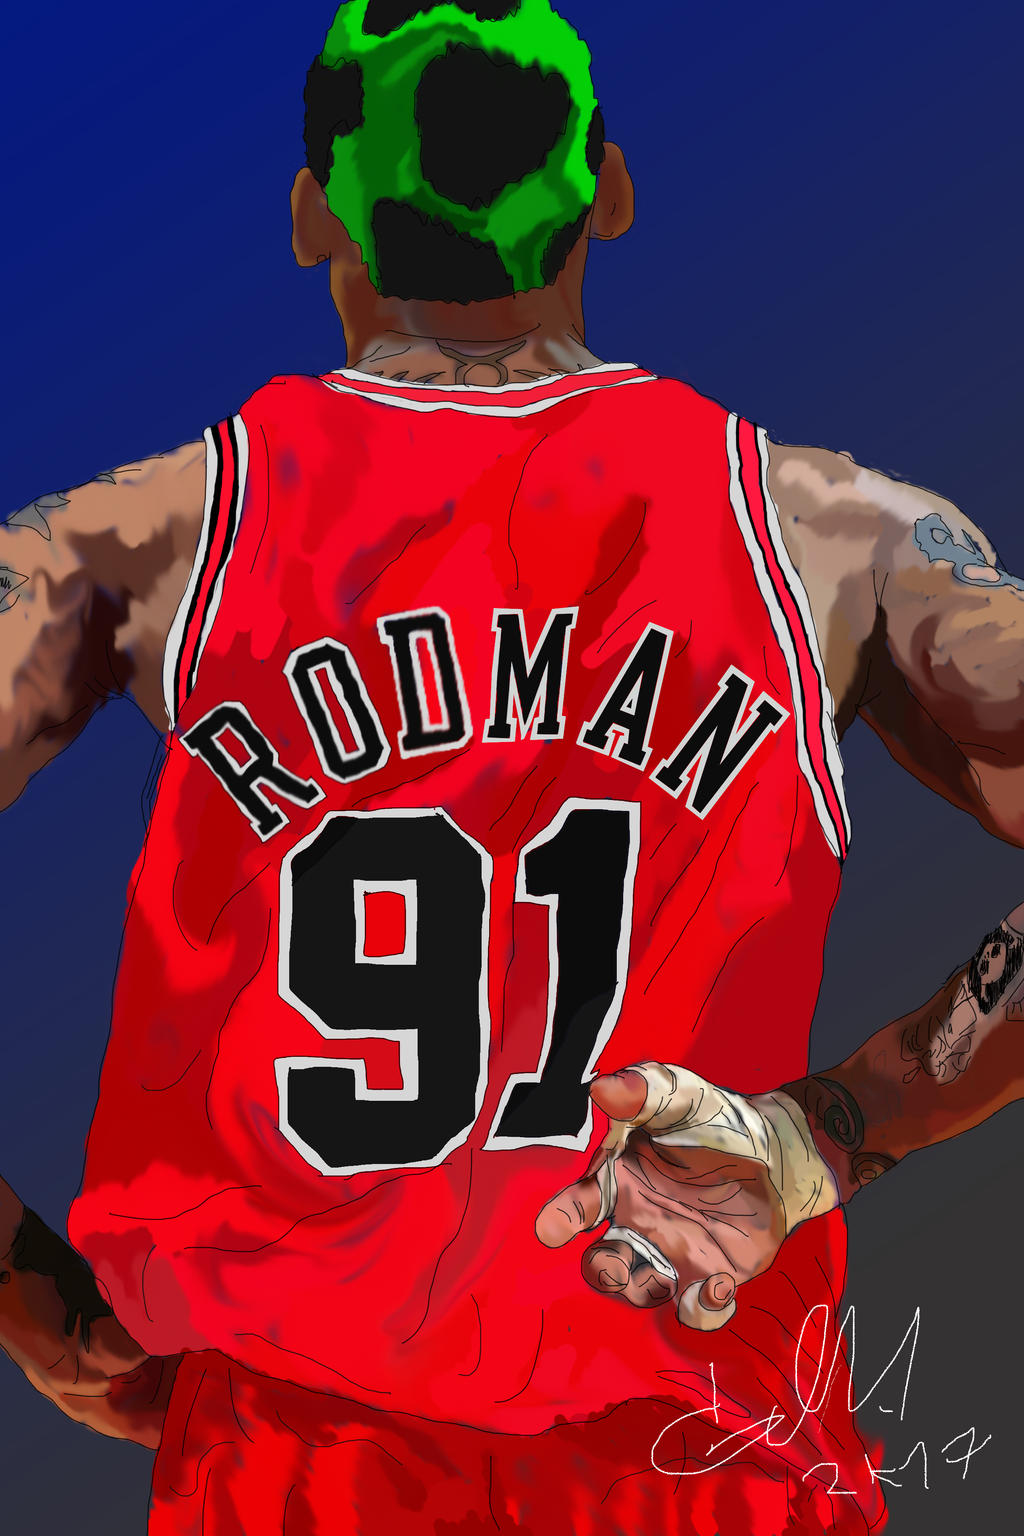 Dennis Rodman by Archer120 on DeviantArt